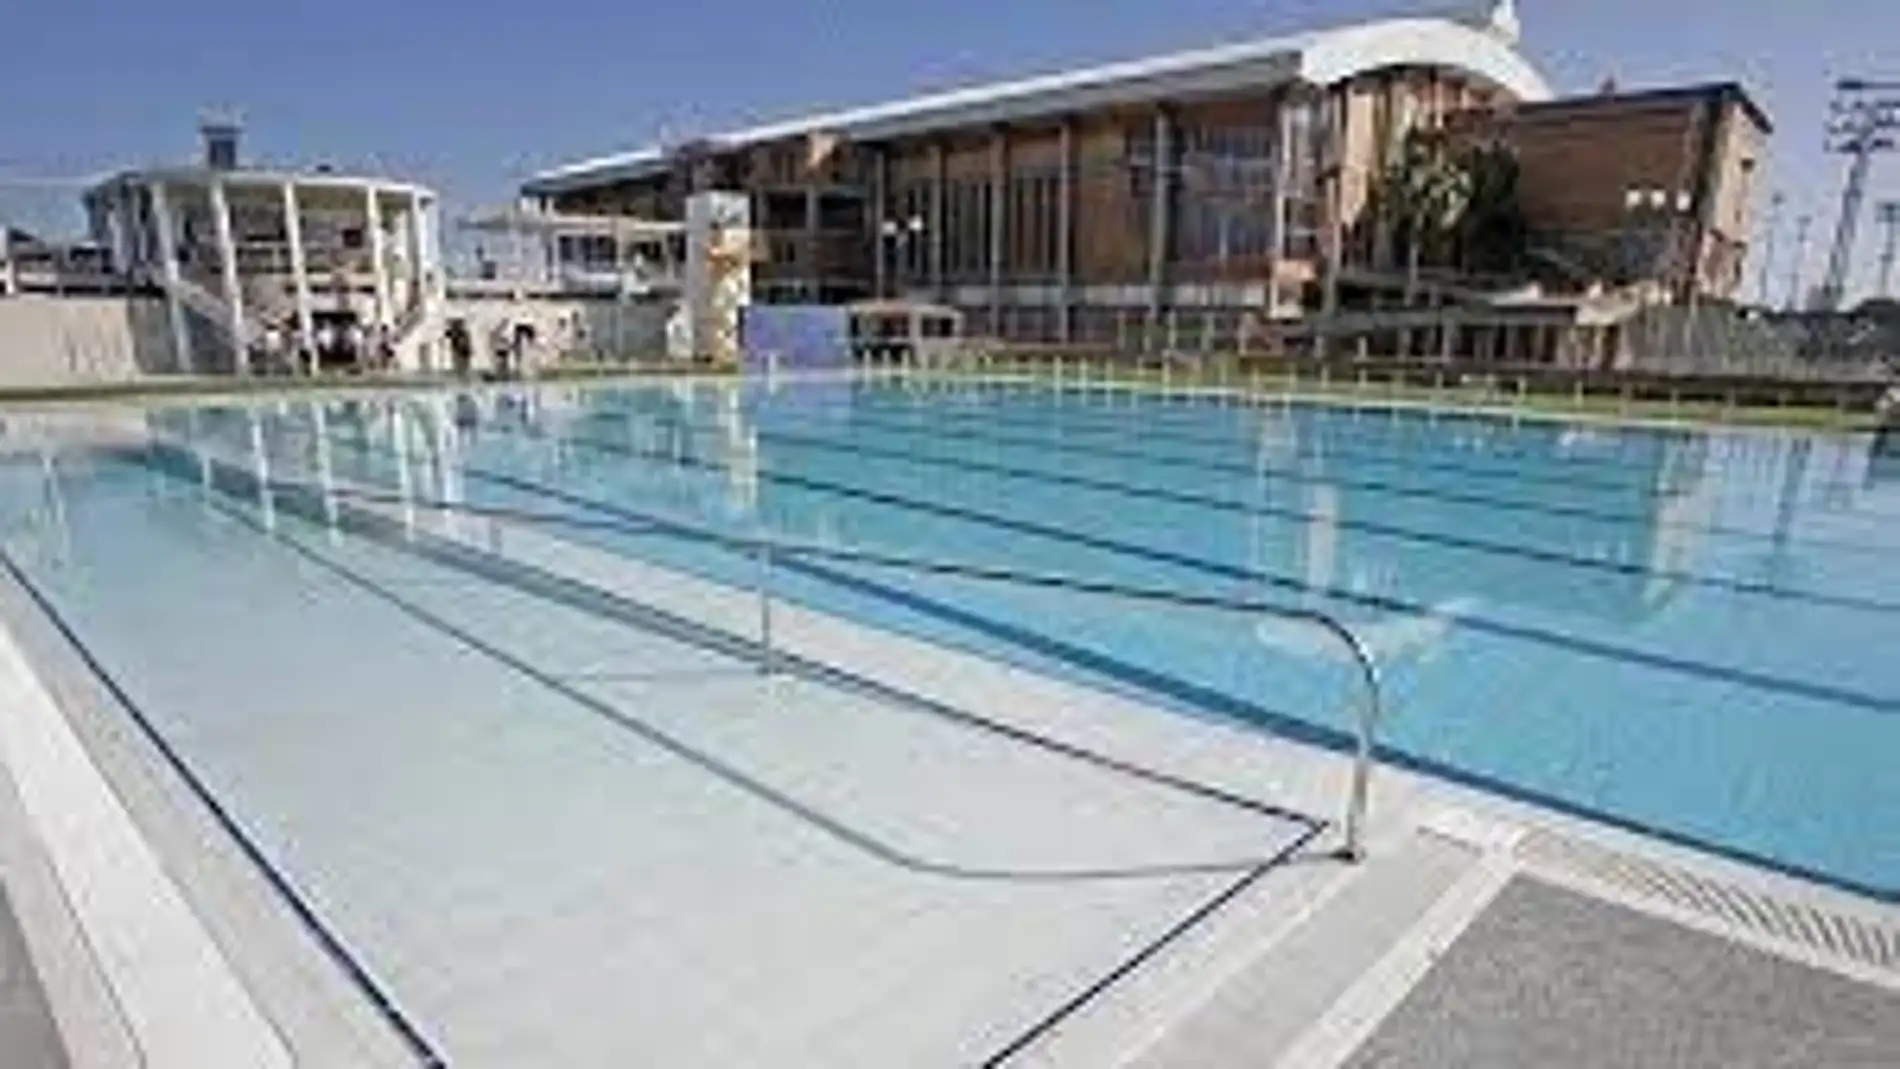 La piscina de verano de La Granadilla de Badajoz cerrará este sábado y domingo por la celebración de la Copa Judex